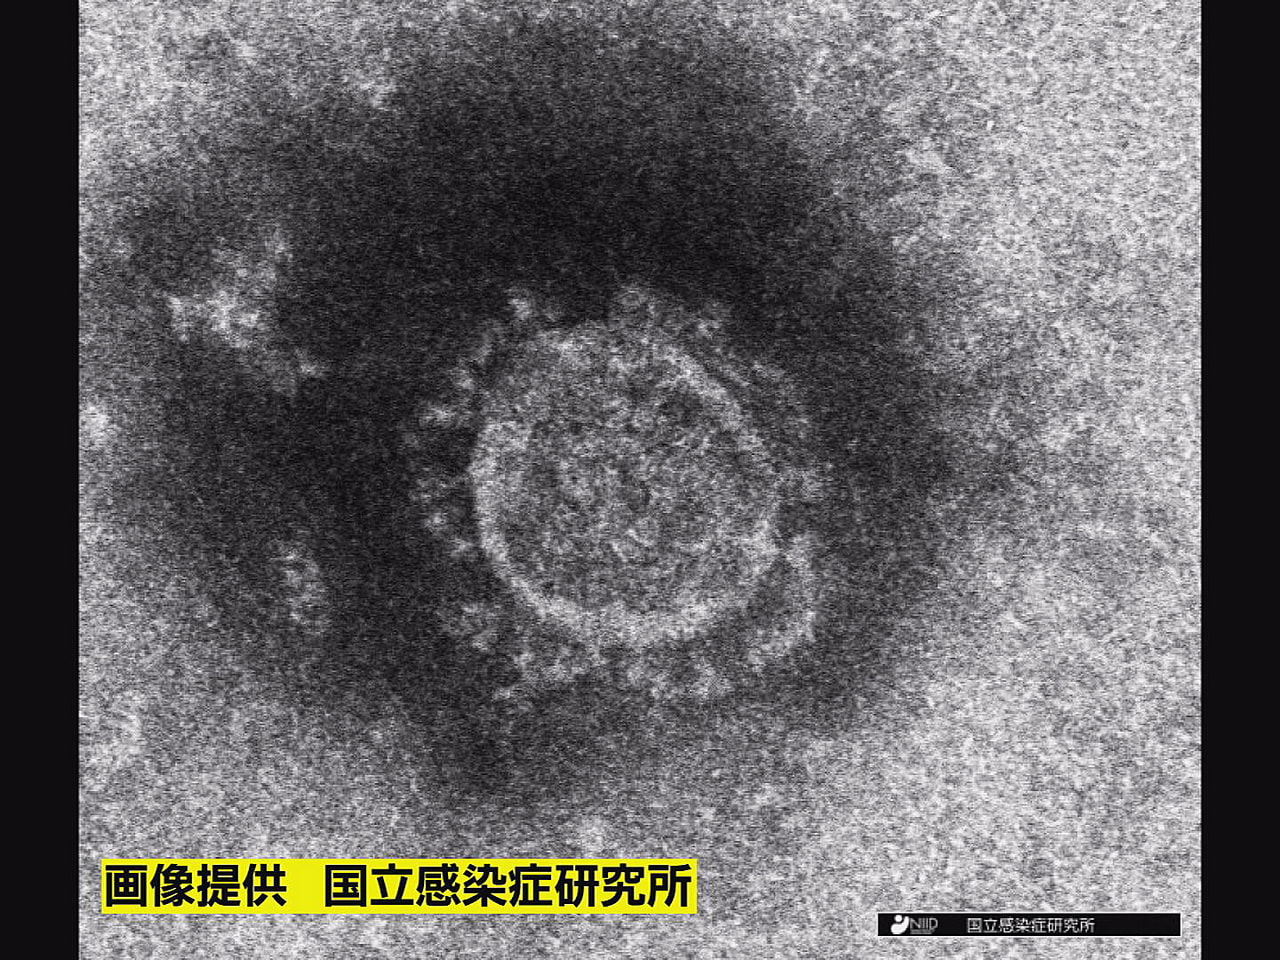 岐阜県は１１日、新型コロナウイルスの新規感染者が９６１人、また死者が６人確認され...